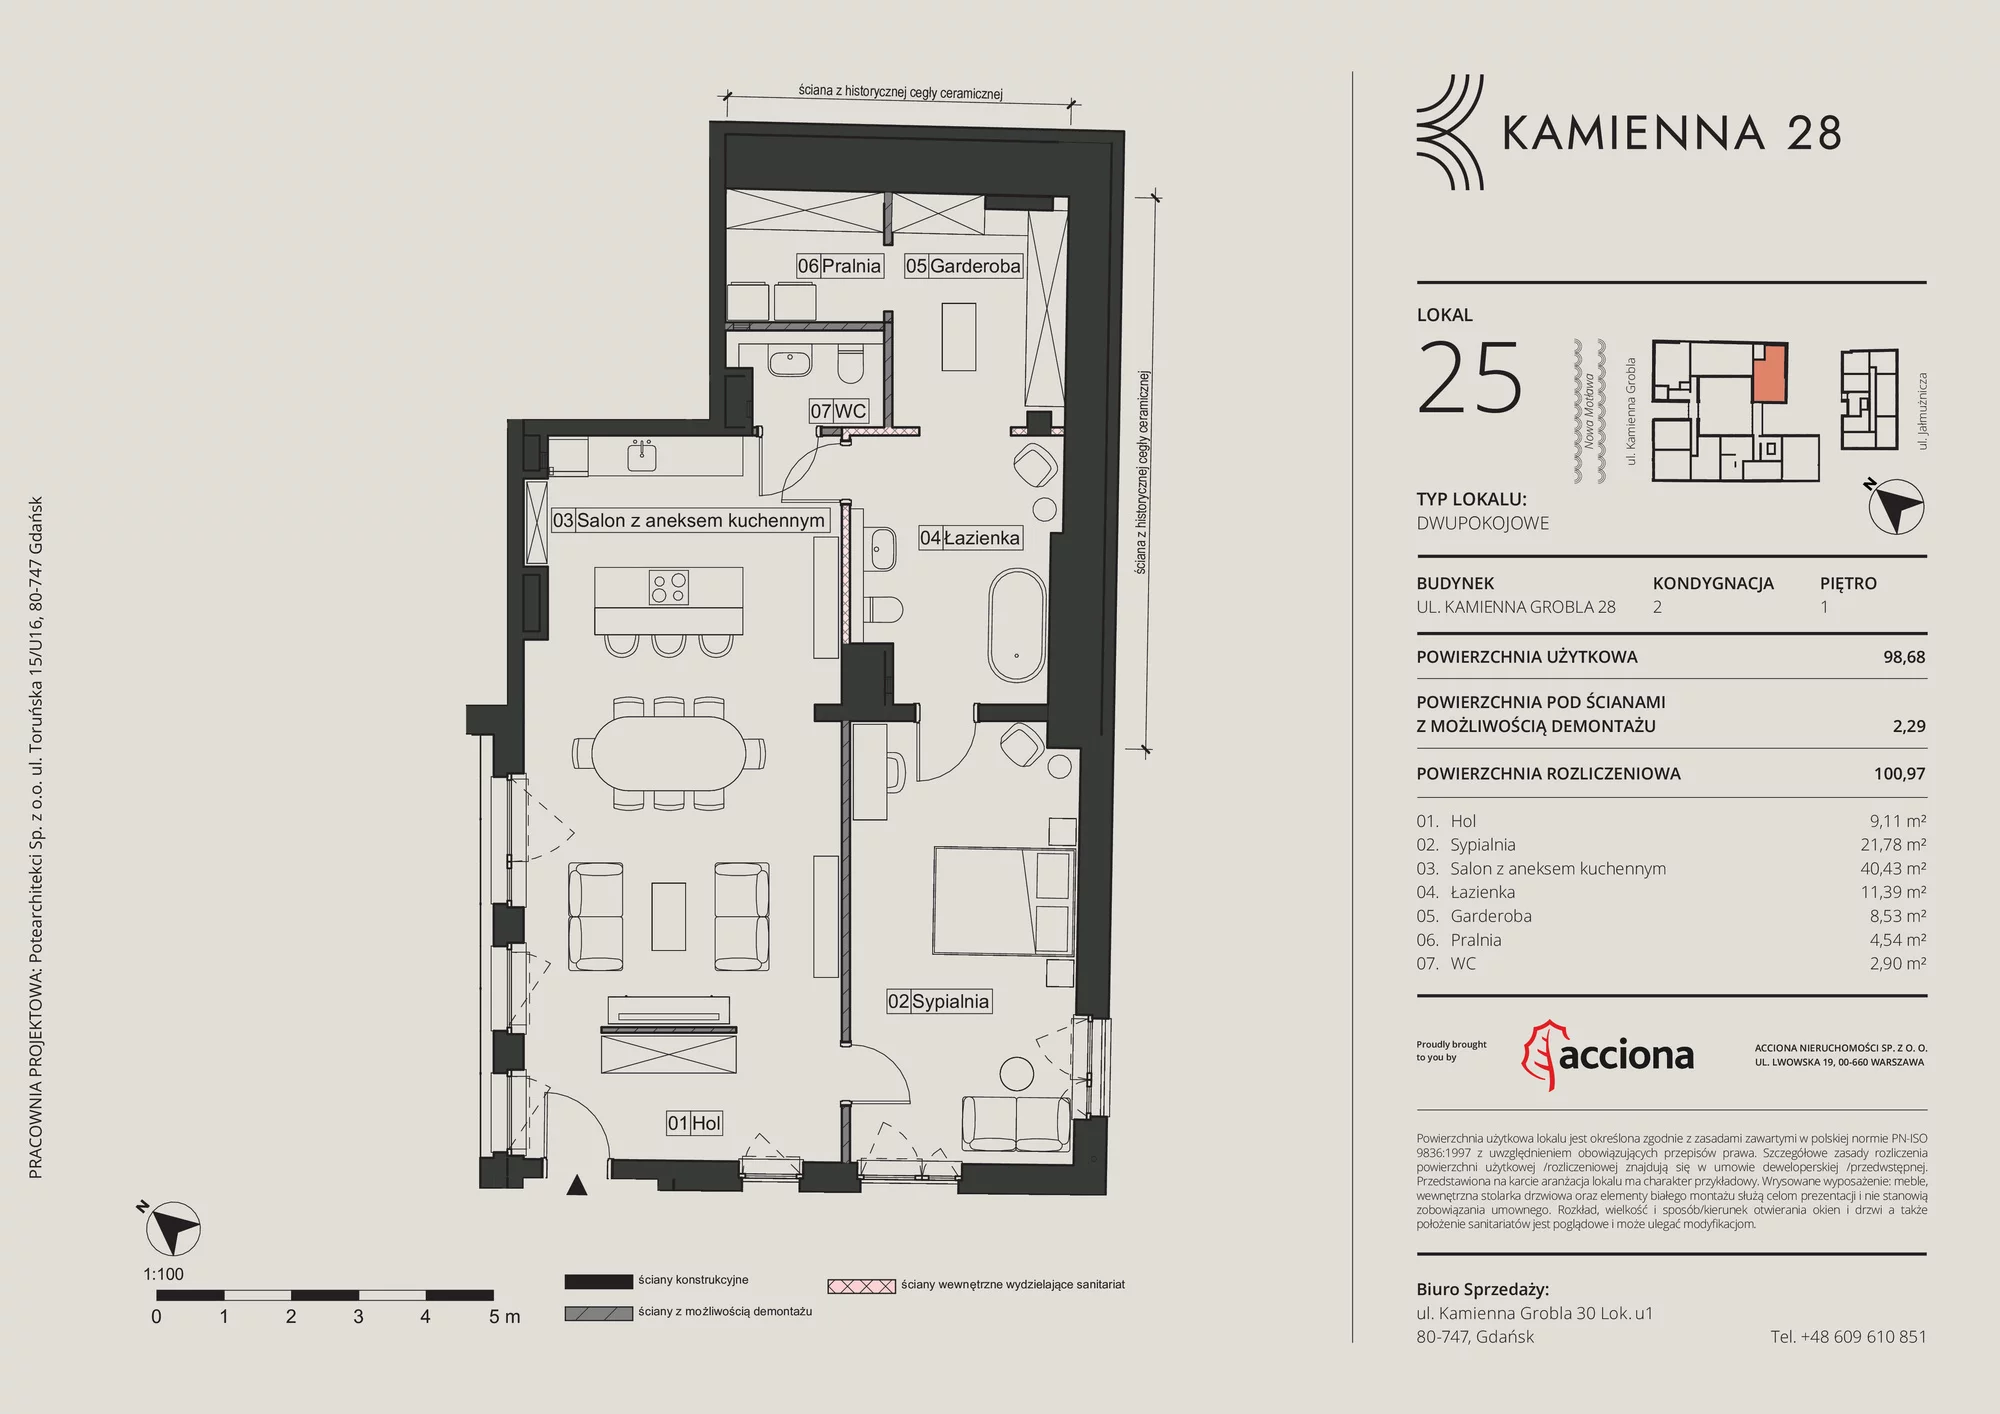 Apartament 100,97 m², piętro 1, oferta nr 28.25, Kamienna 28, Gdańsk, Śródmieście, Dolne Miasto, ul. Kamienna Grobla 28/29